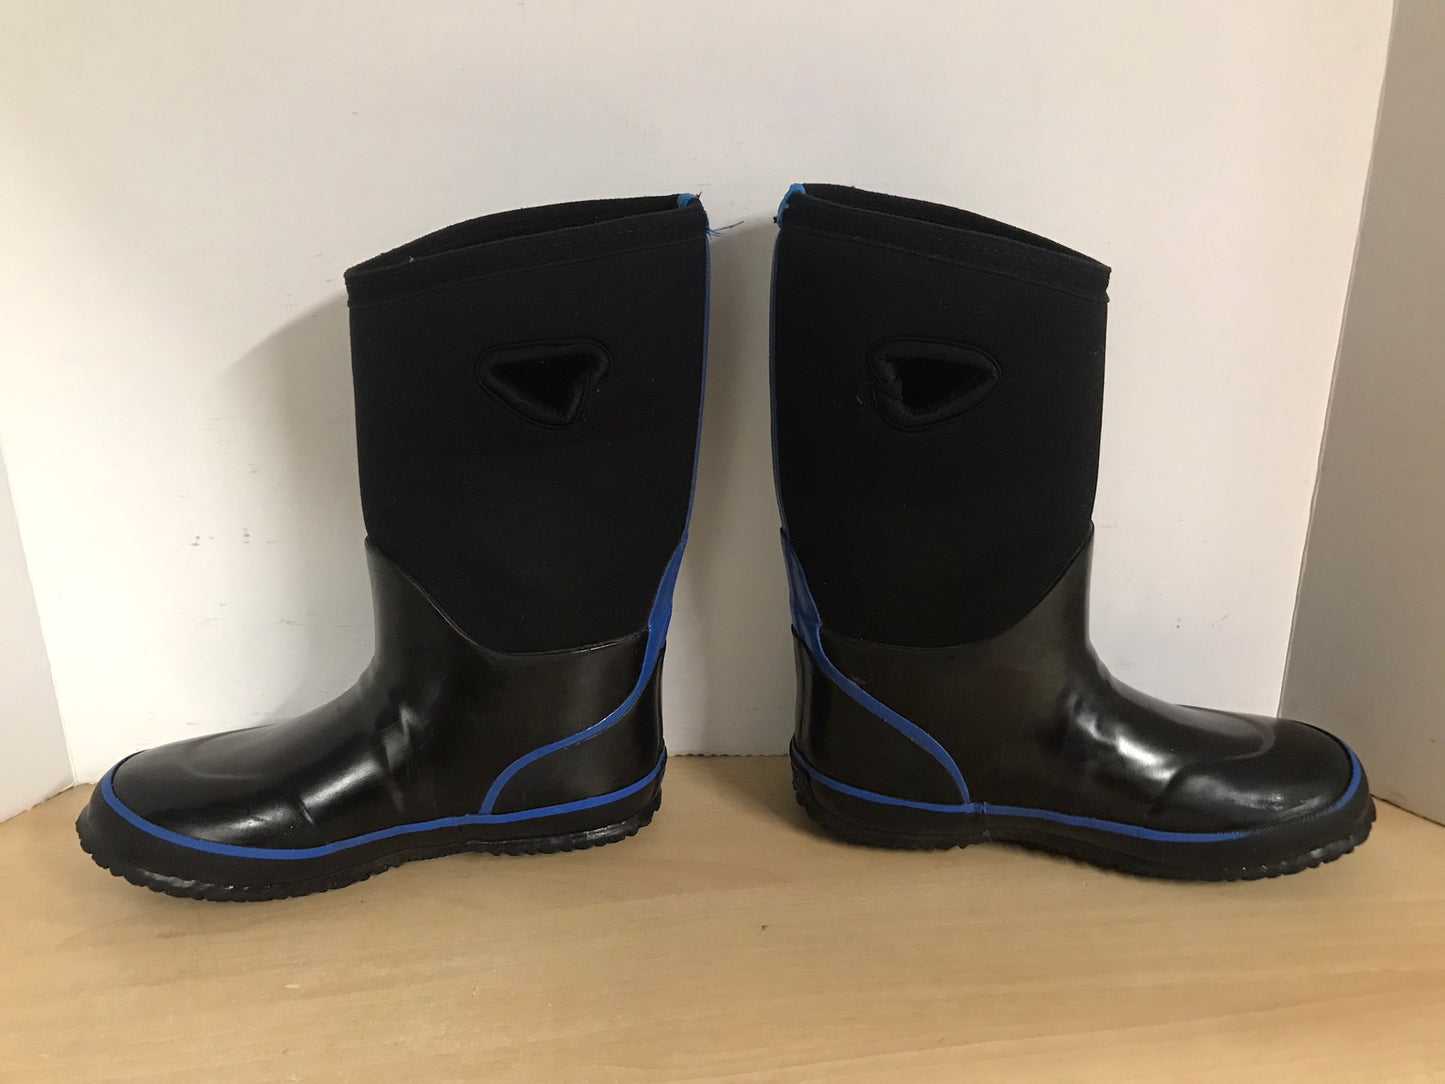 Bogs Style Child Size 4 Black Blue Neoprene Rubber Rain Winter Snow Waterproof Boots